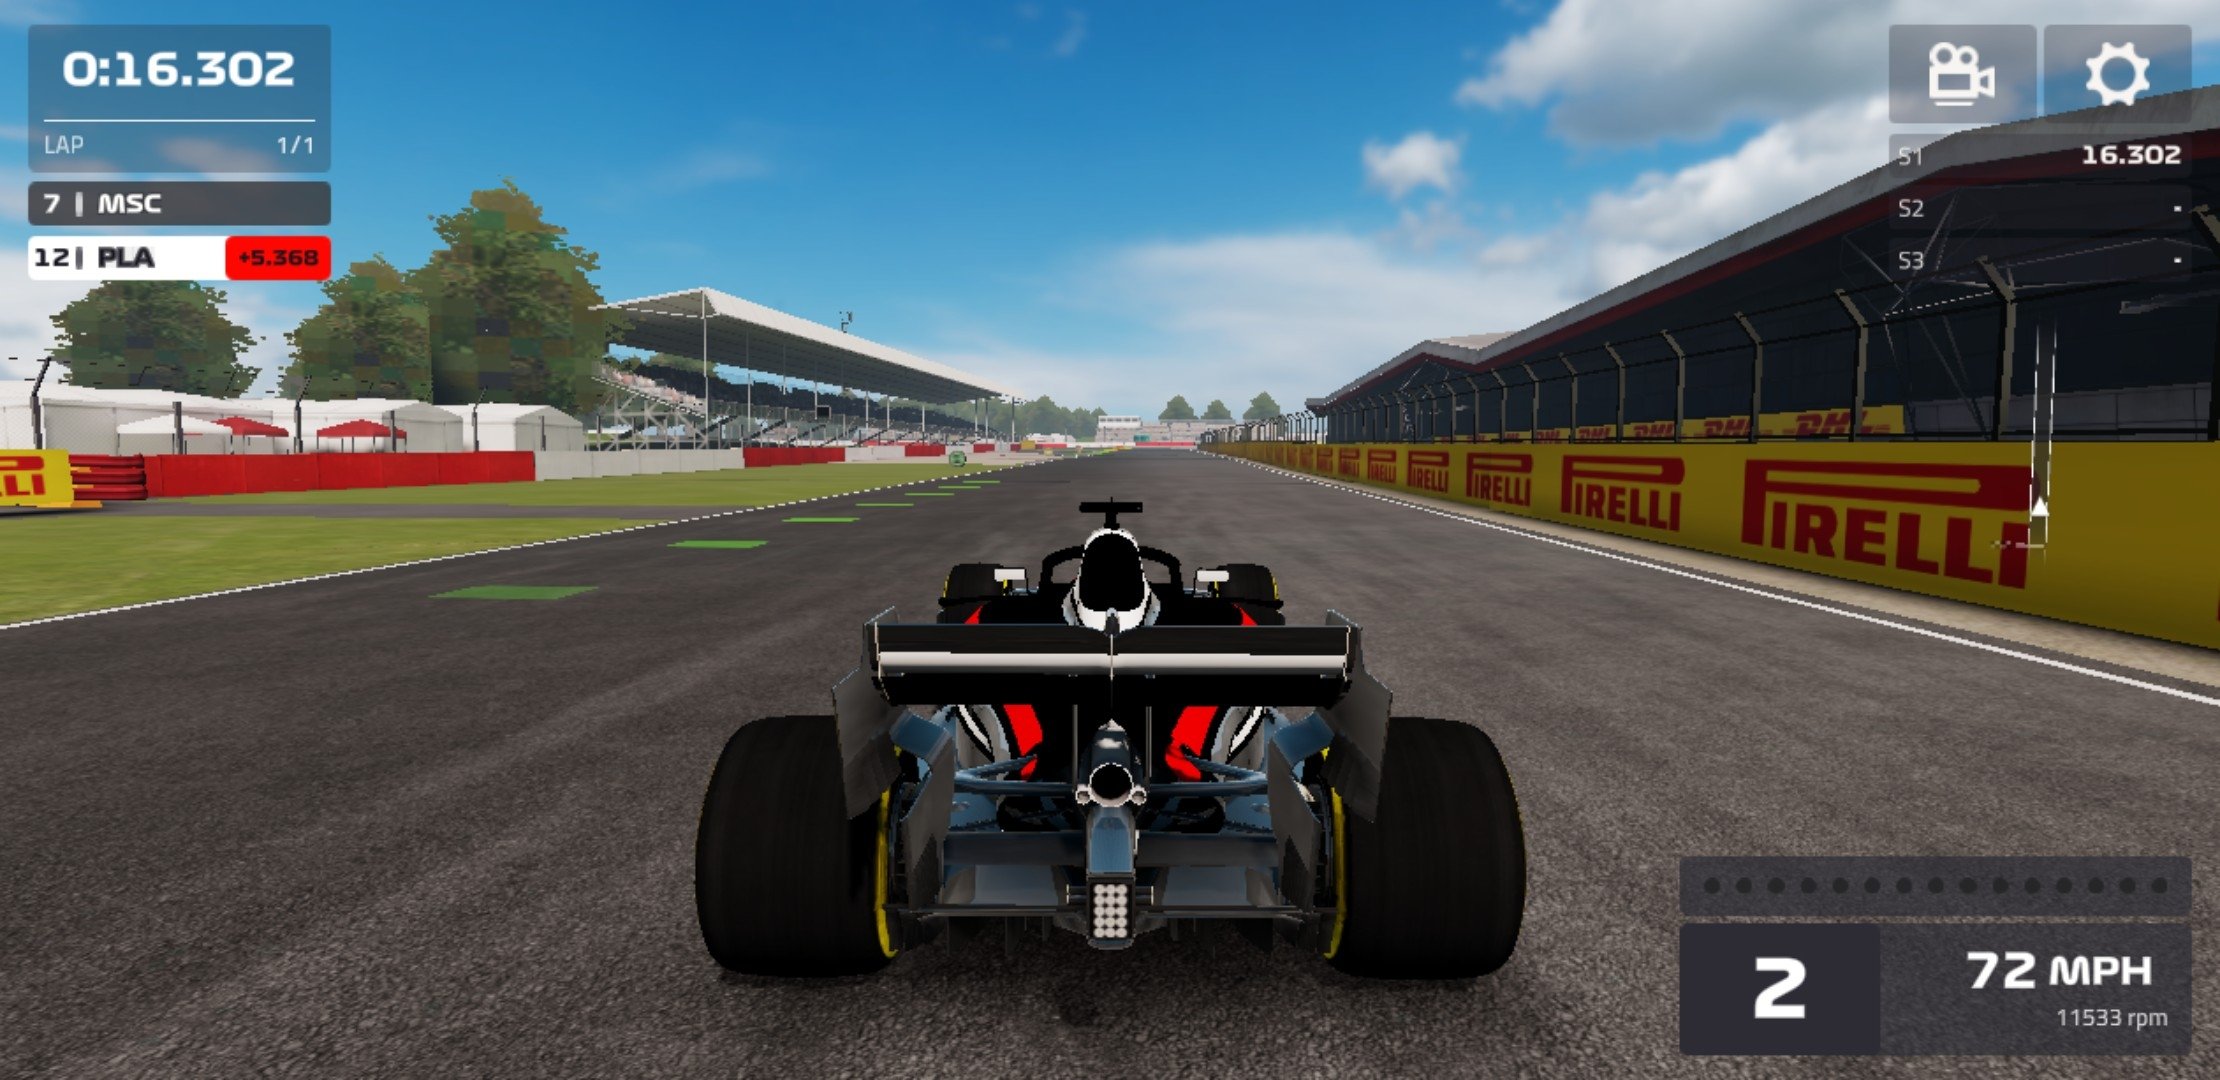 Baixe F1 Mobile Racing no PC com MEmu